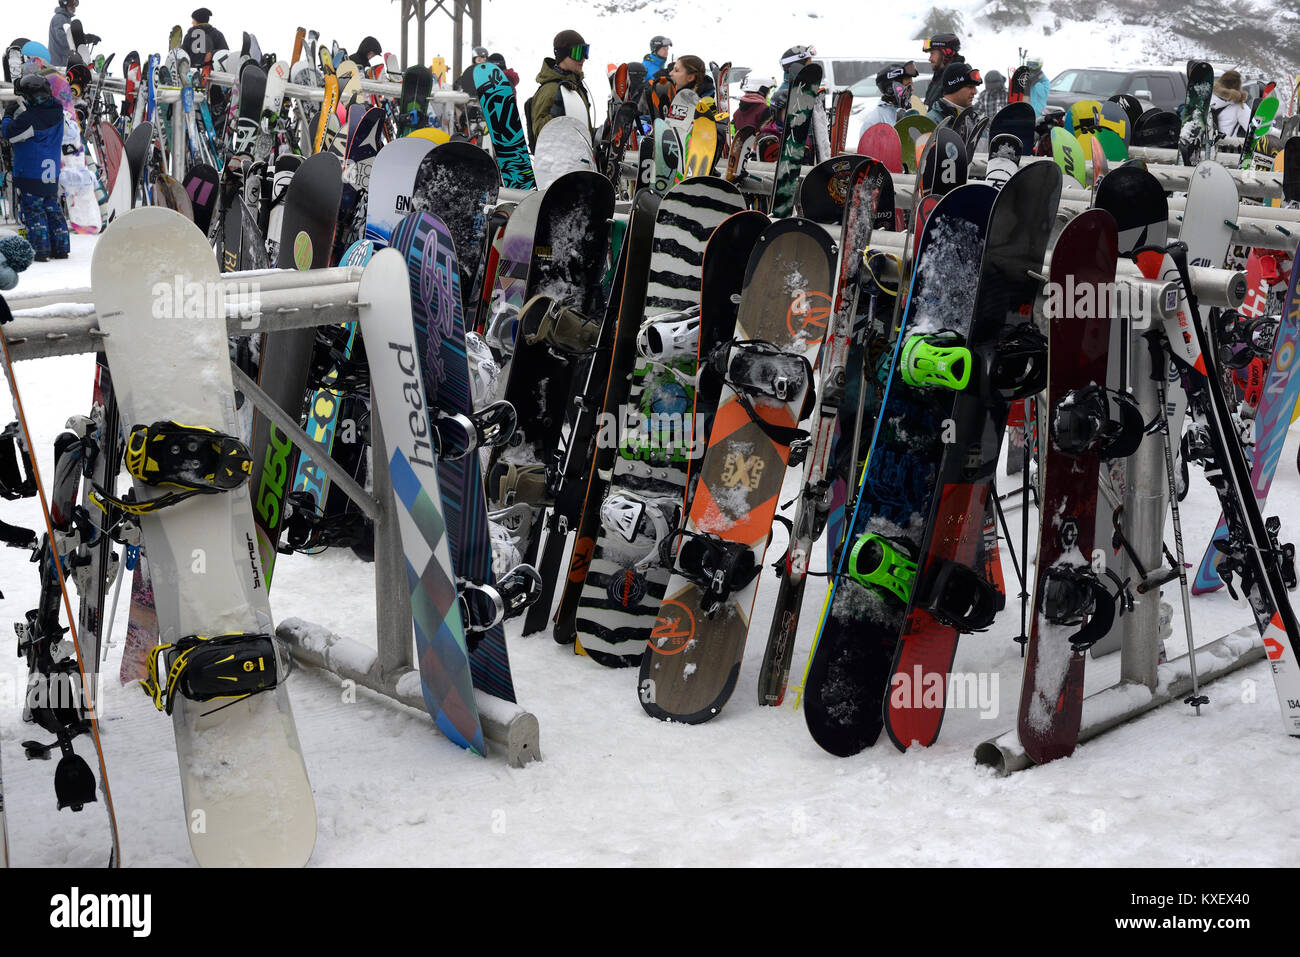 Tablas de snowboard en el Monte Washington. Foto de stock